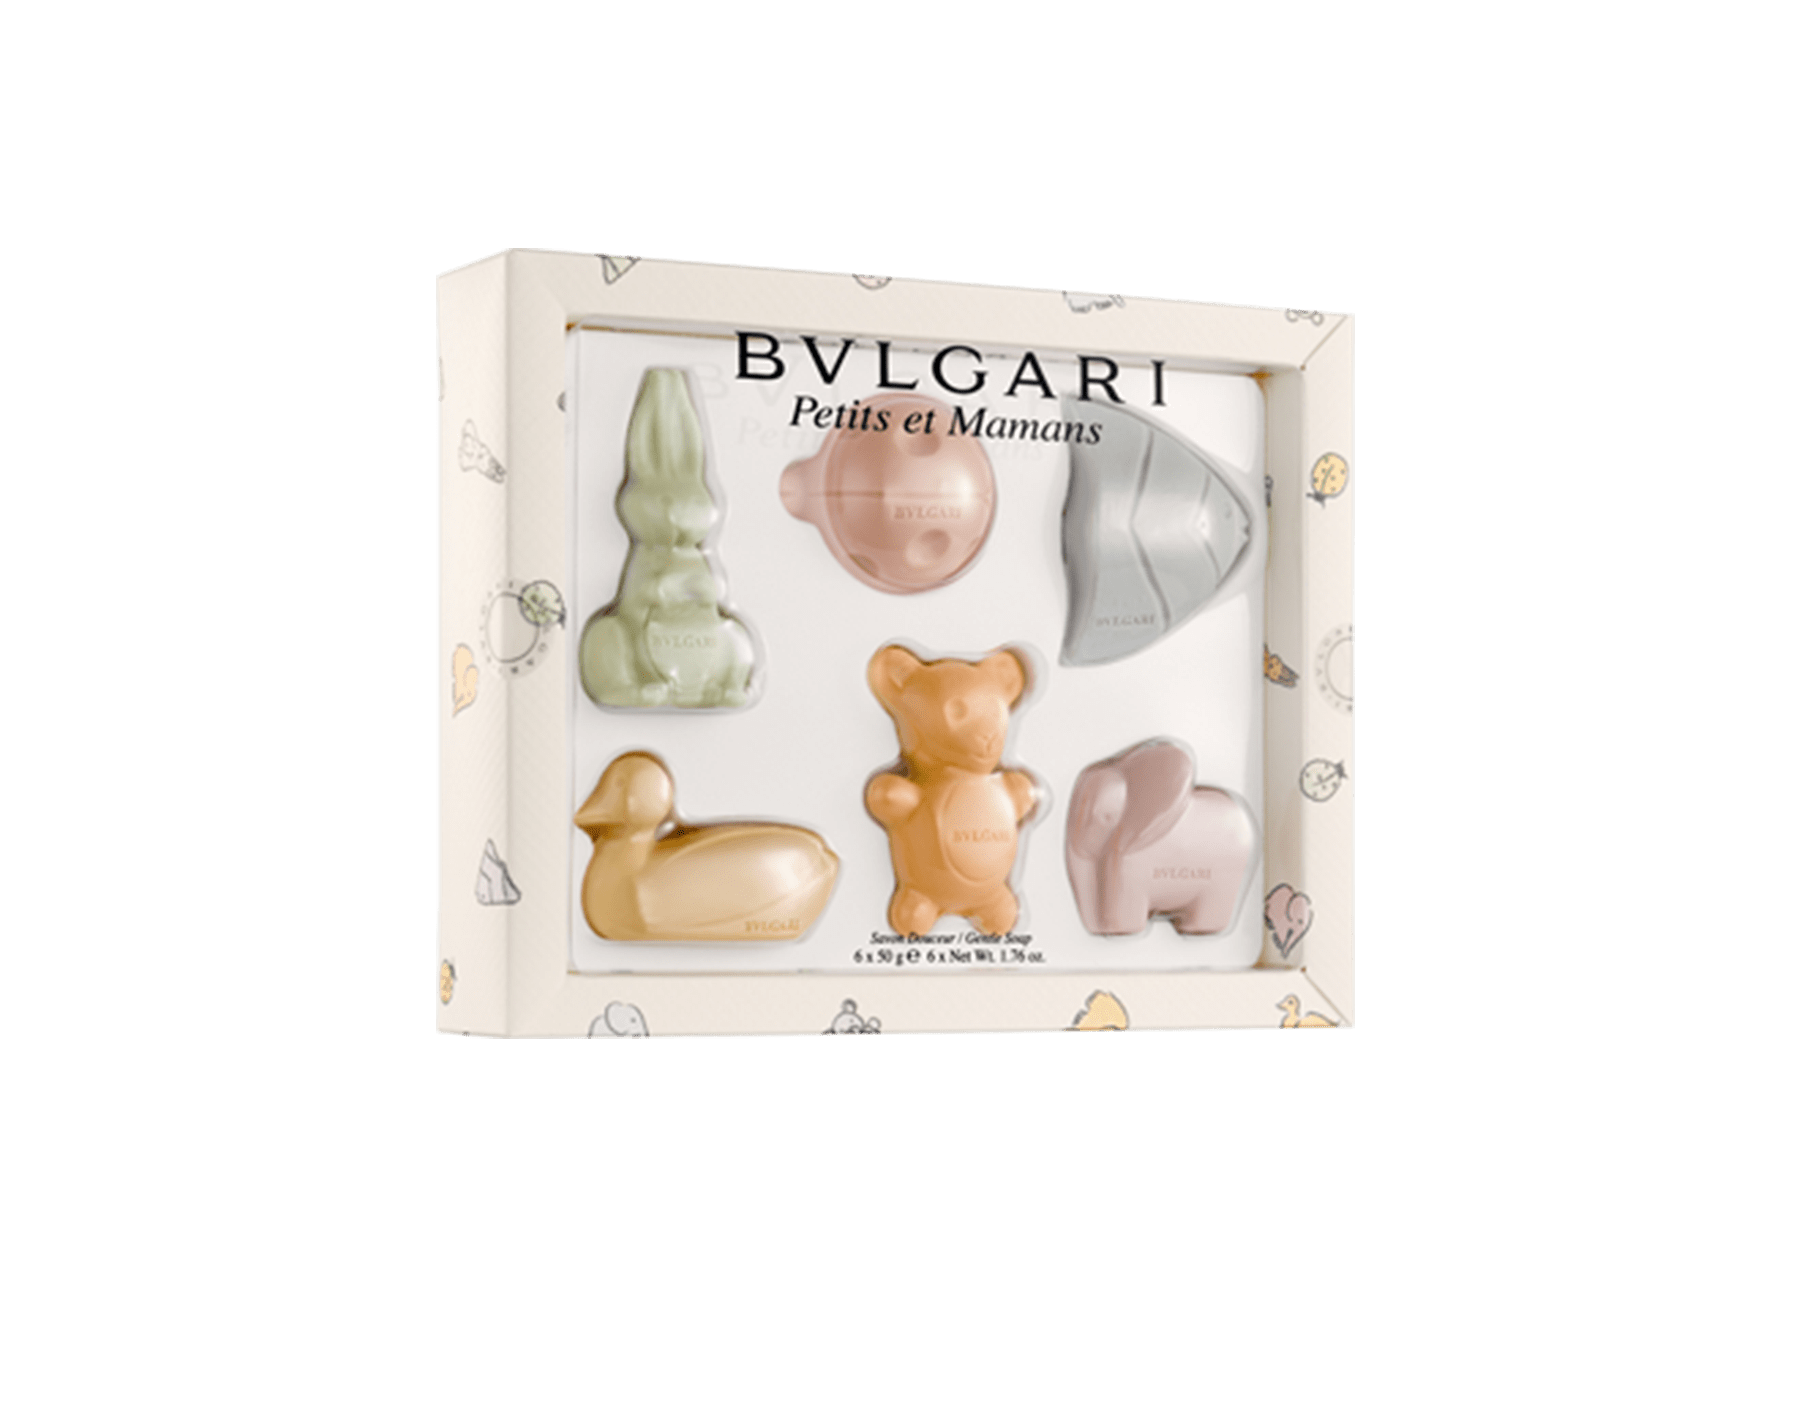 buy bvlgari soap